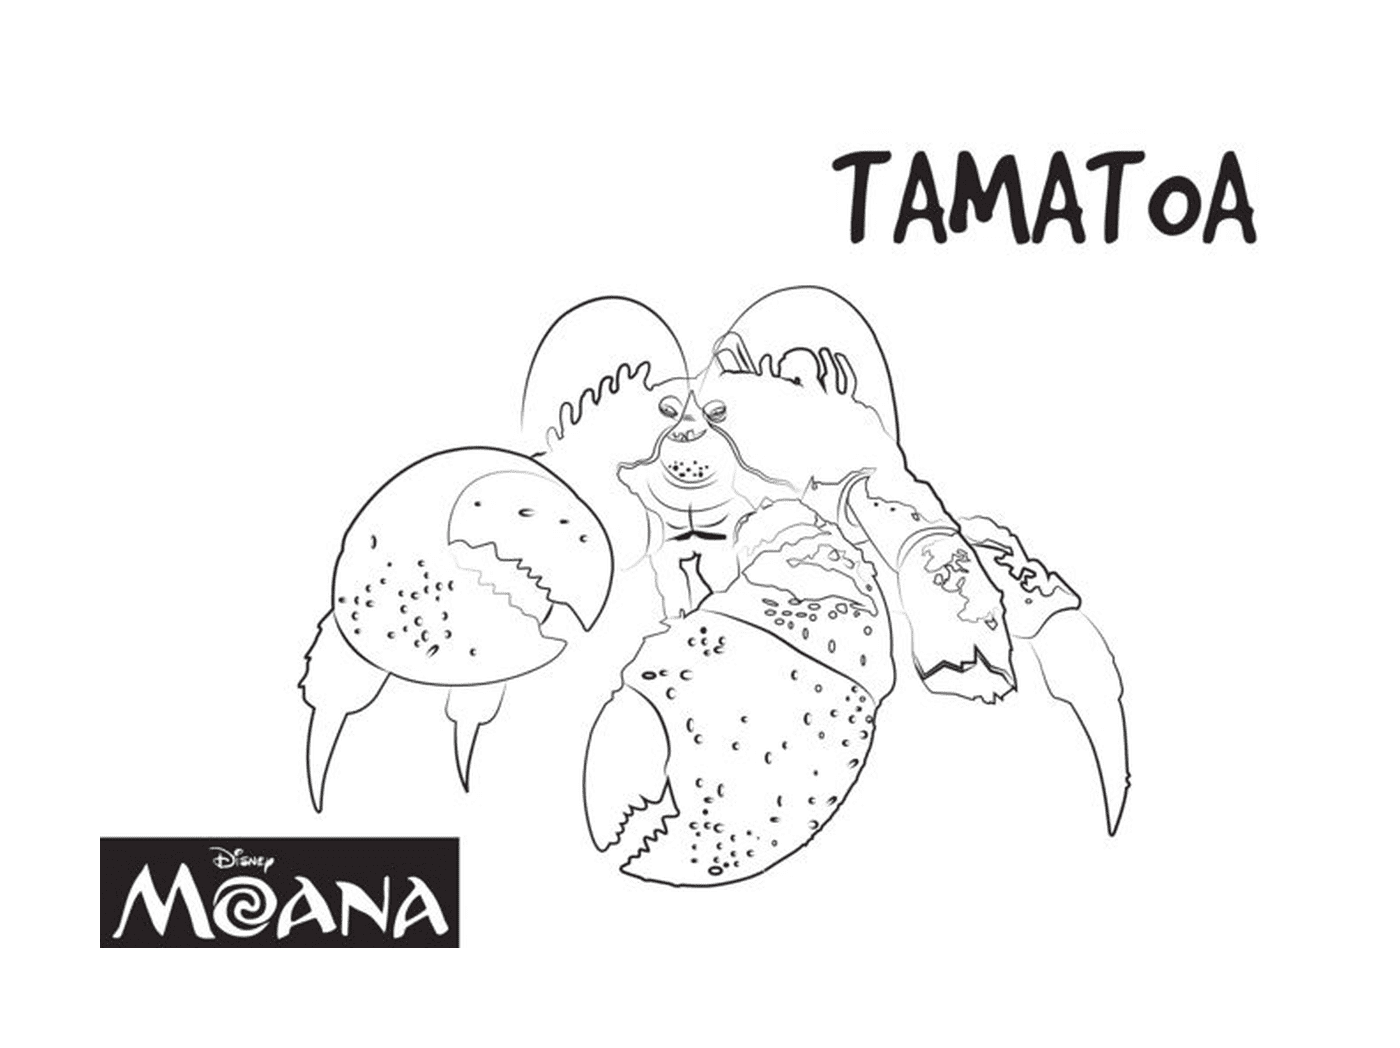  Tamatoa, creatura esotica di Moana 